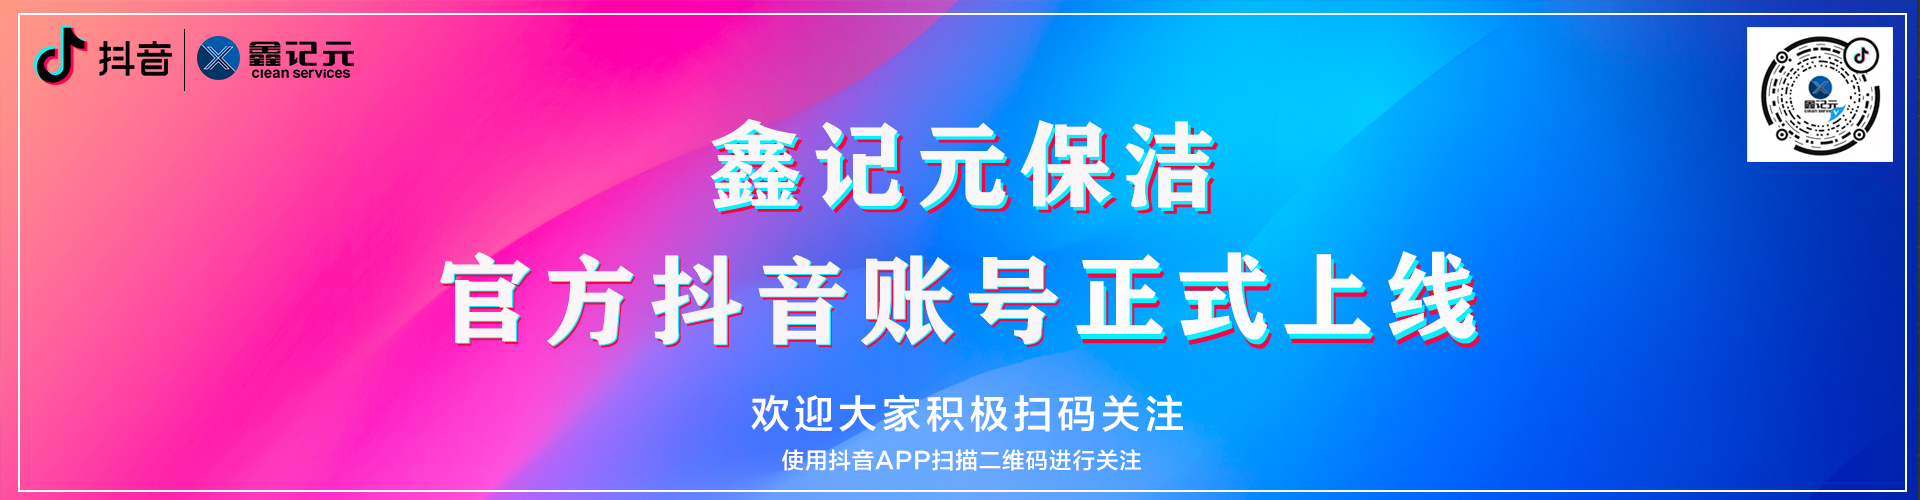 【企业资讯】海普集团旗下鑫记元保洁官方抖音账号正式上线！